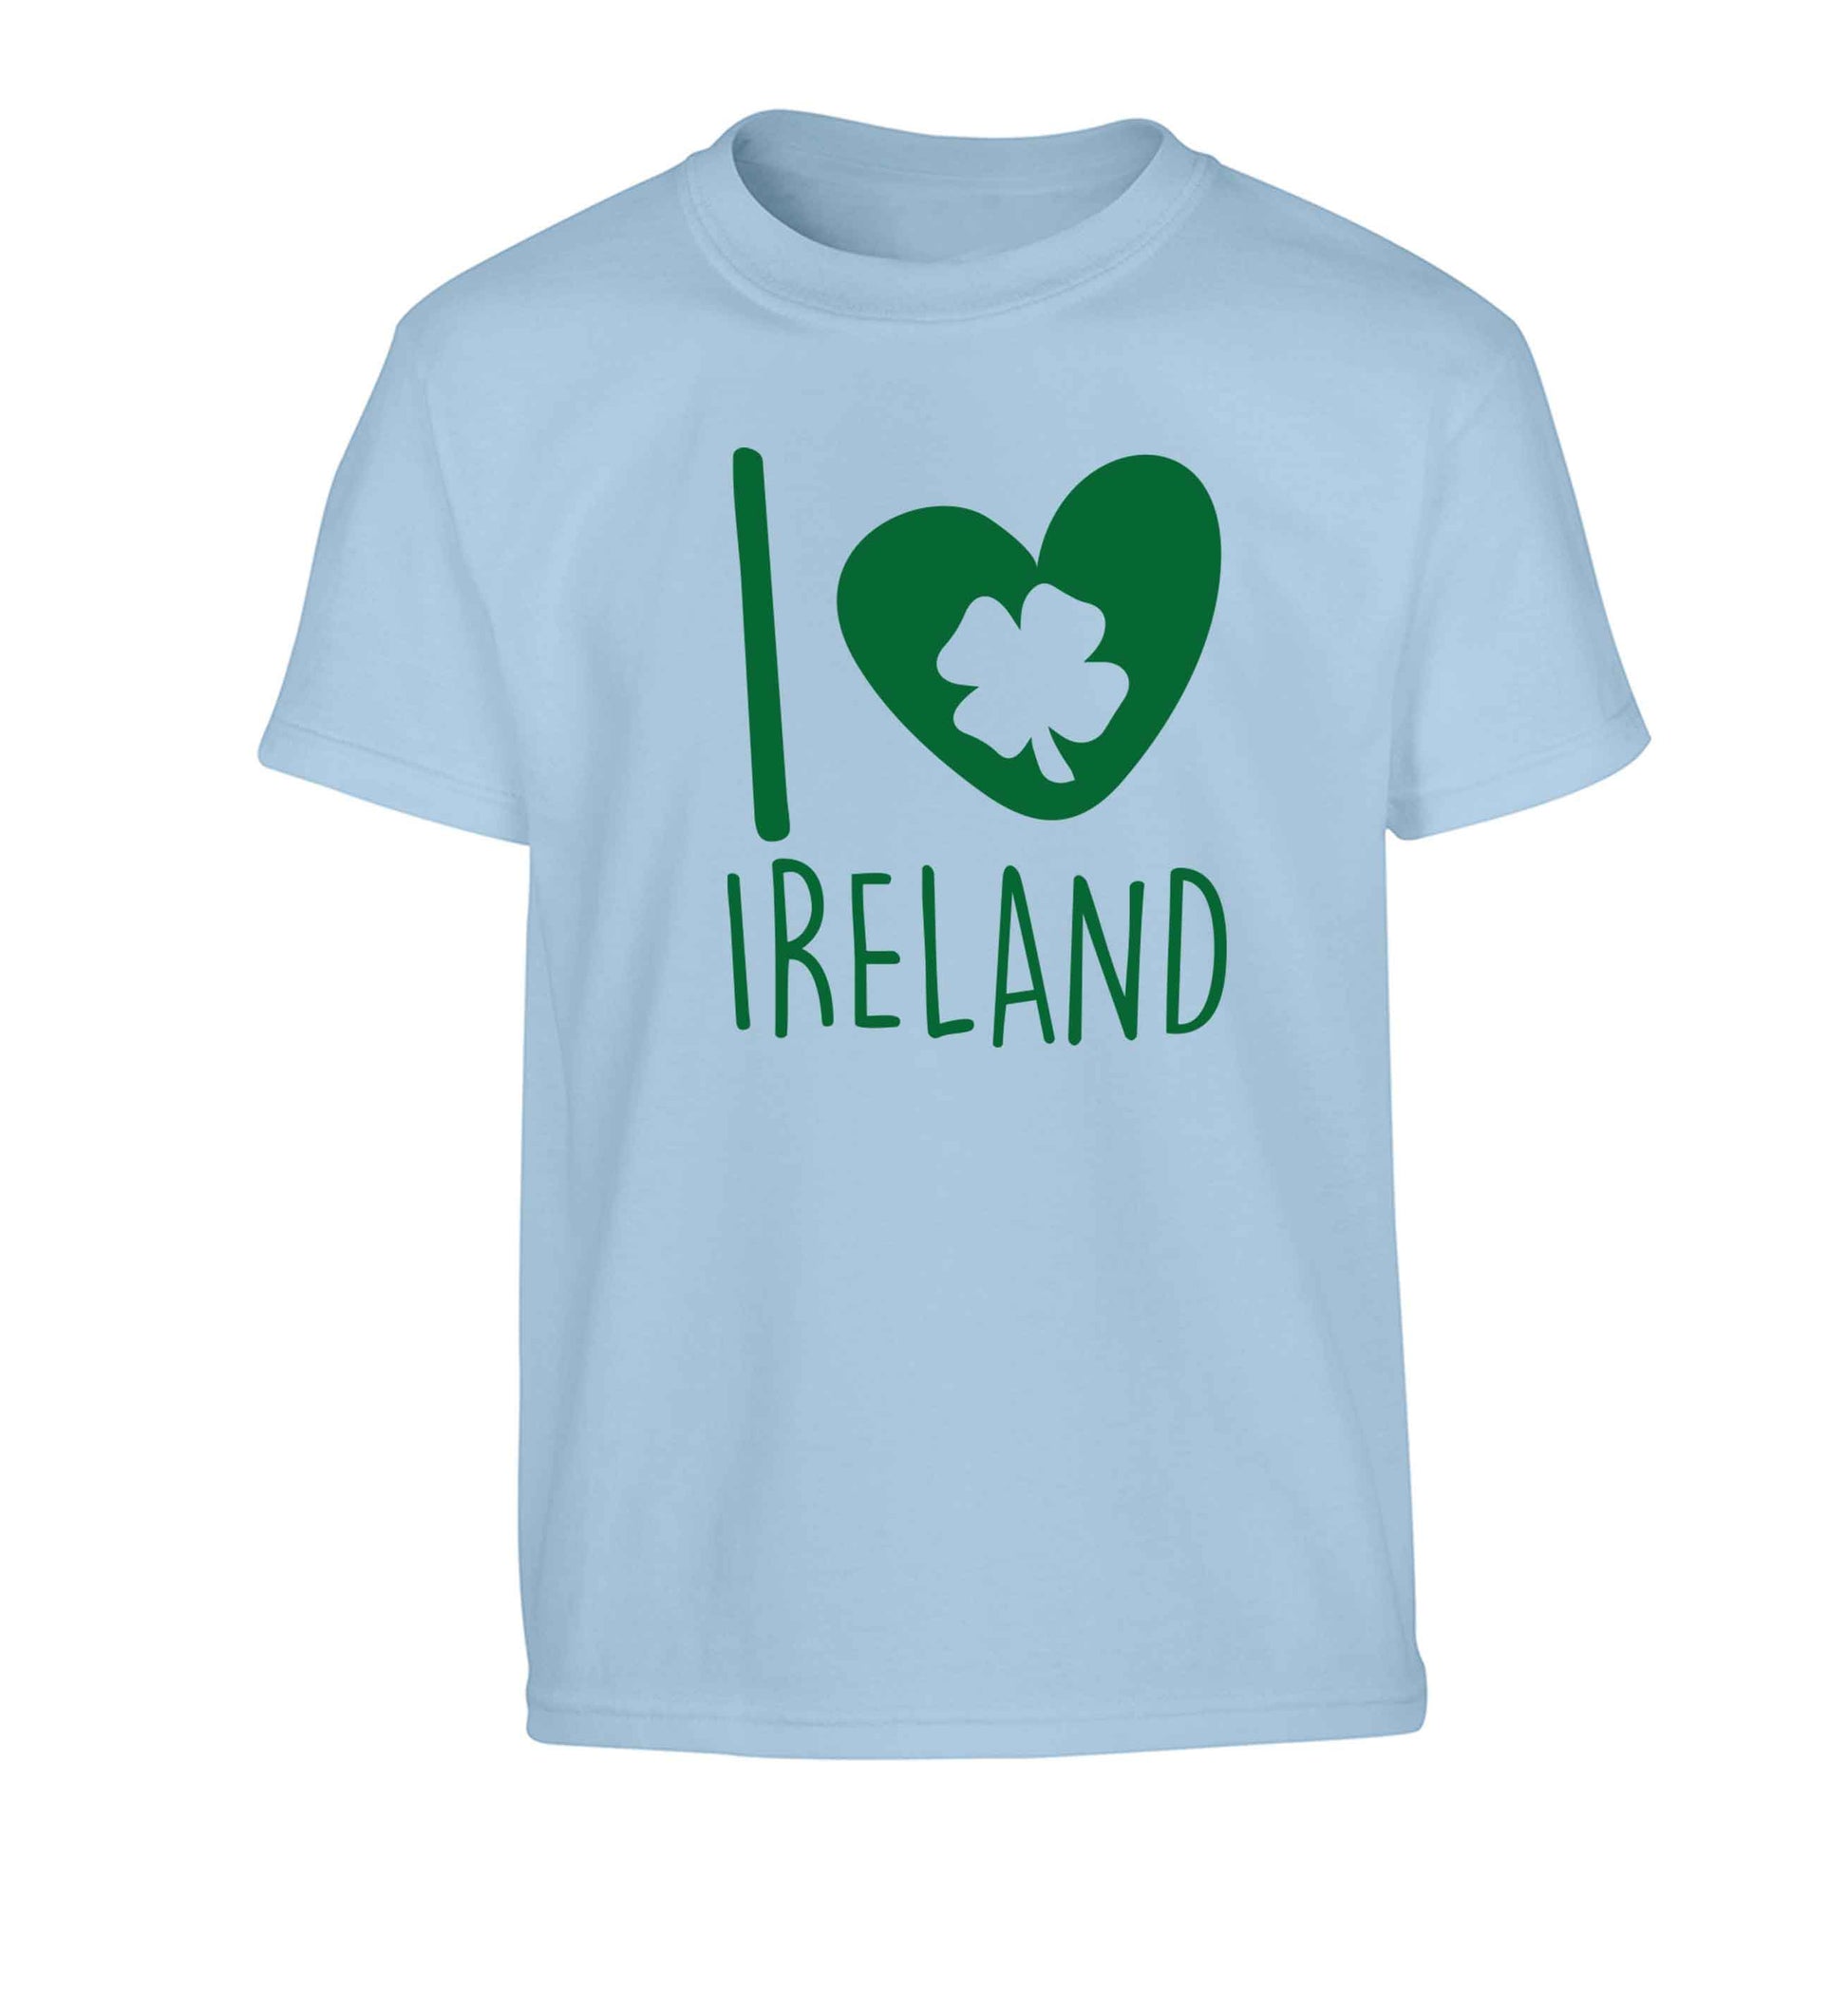 I love Ireland Children's light blue Tshirt 12-13 Years